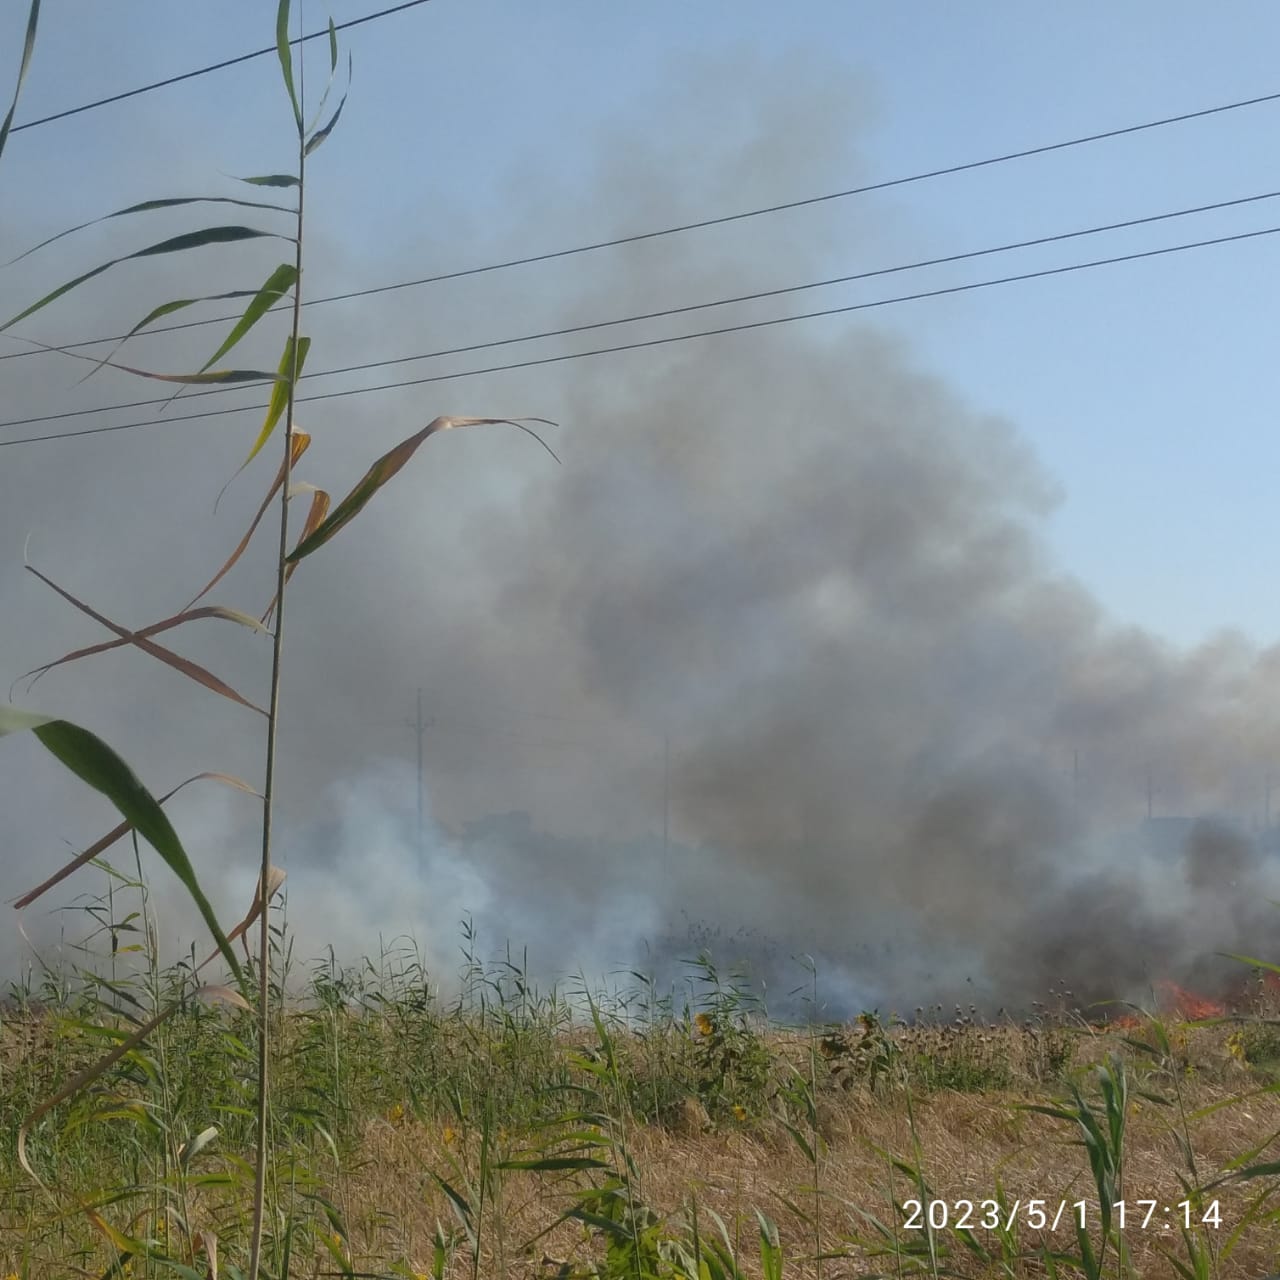  محصول القمح احترق.. السيطرة على حريق نشب بأرض زراعية بكفر الشيخ 